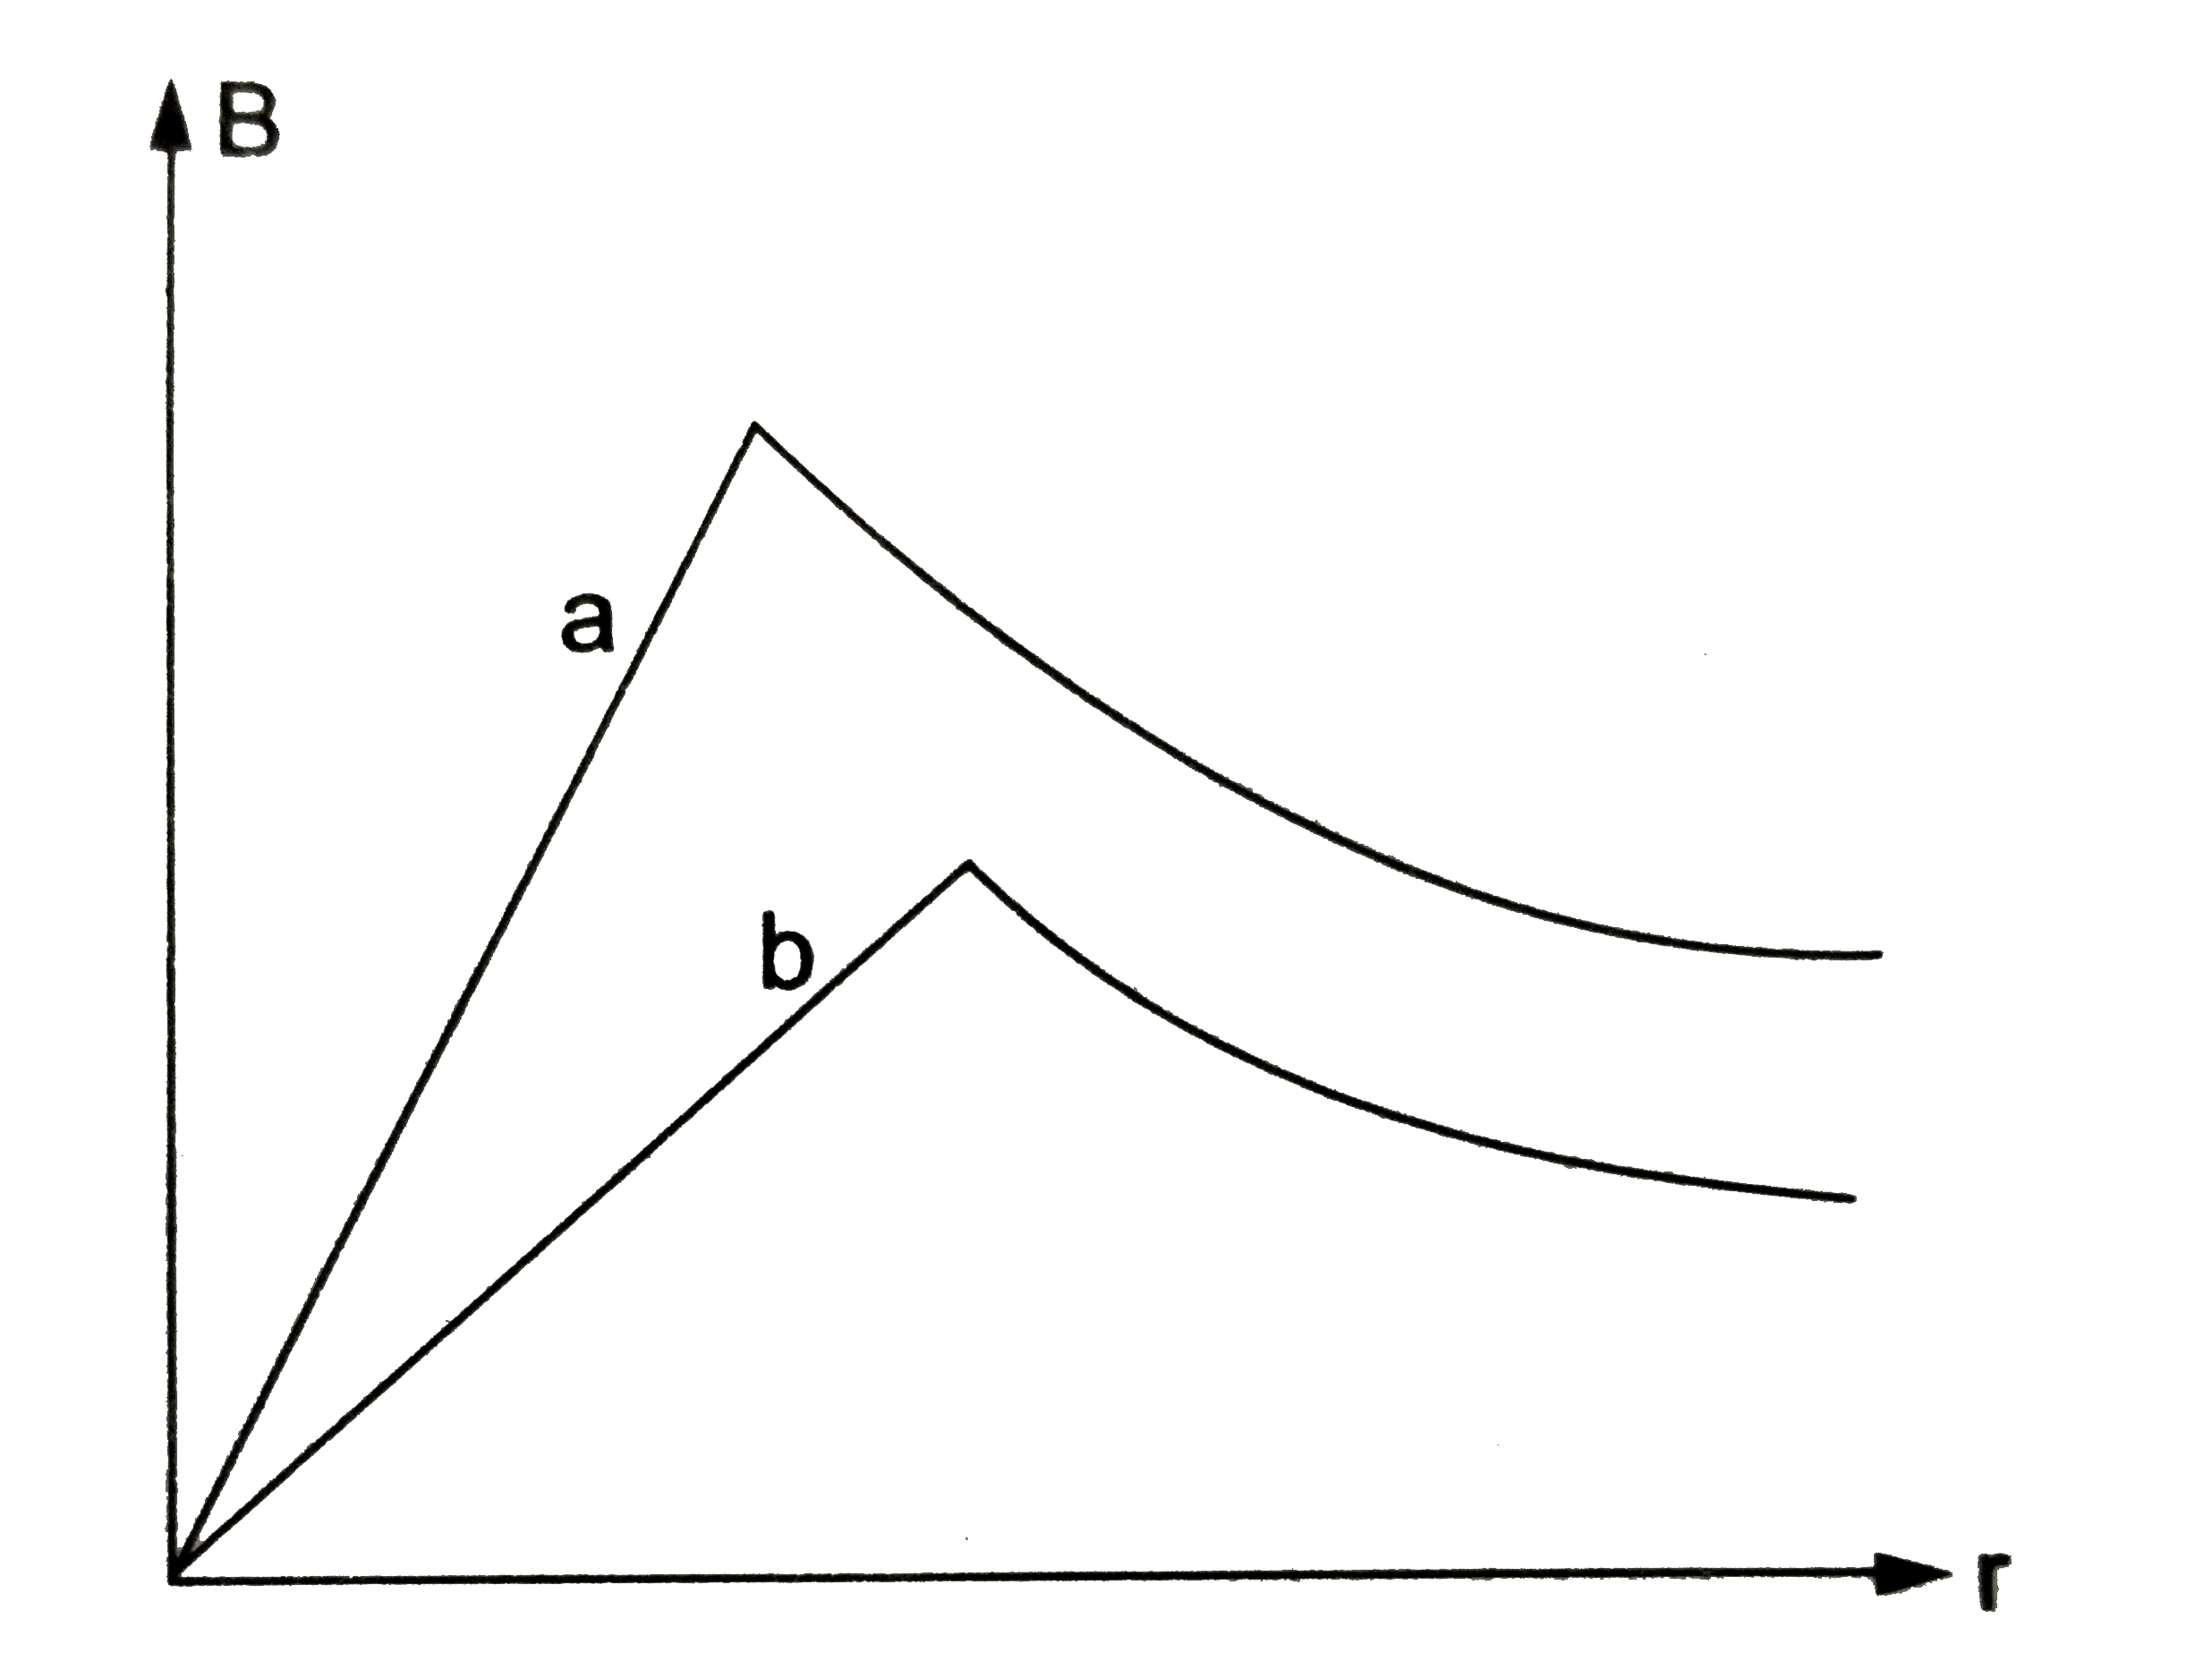 विभिन्न त्रिज्या के दो बेलनाकार तार से समान धारा प्रवाहित करने पर उत्पन्न चुम्बकीय क्षेत्र B का विचरण उनके अक्ष (axis ) से दुरी r के साथ में क्रमश: a तथा b ग्राफ द्वारा प्रदर्शित है। यदि दोनों के अनुप्रस्थ काट पर धारा का वितरण (distribution ) एकसमान (uniform ) हो तब